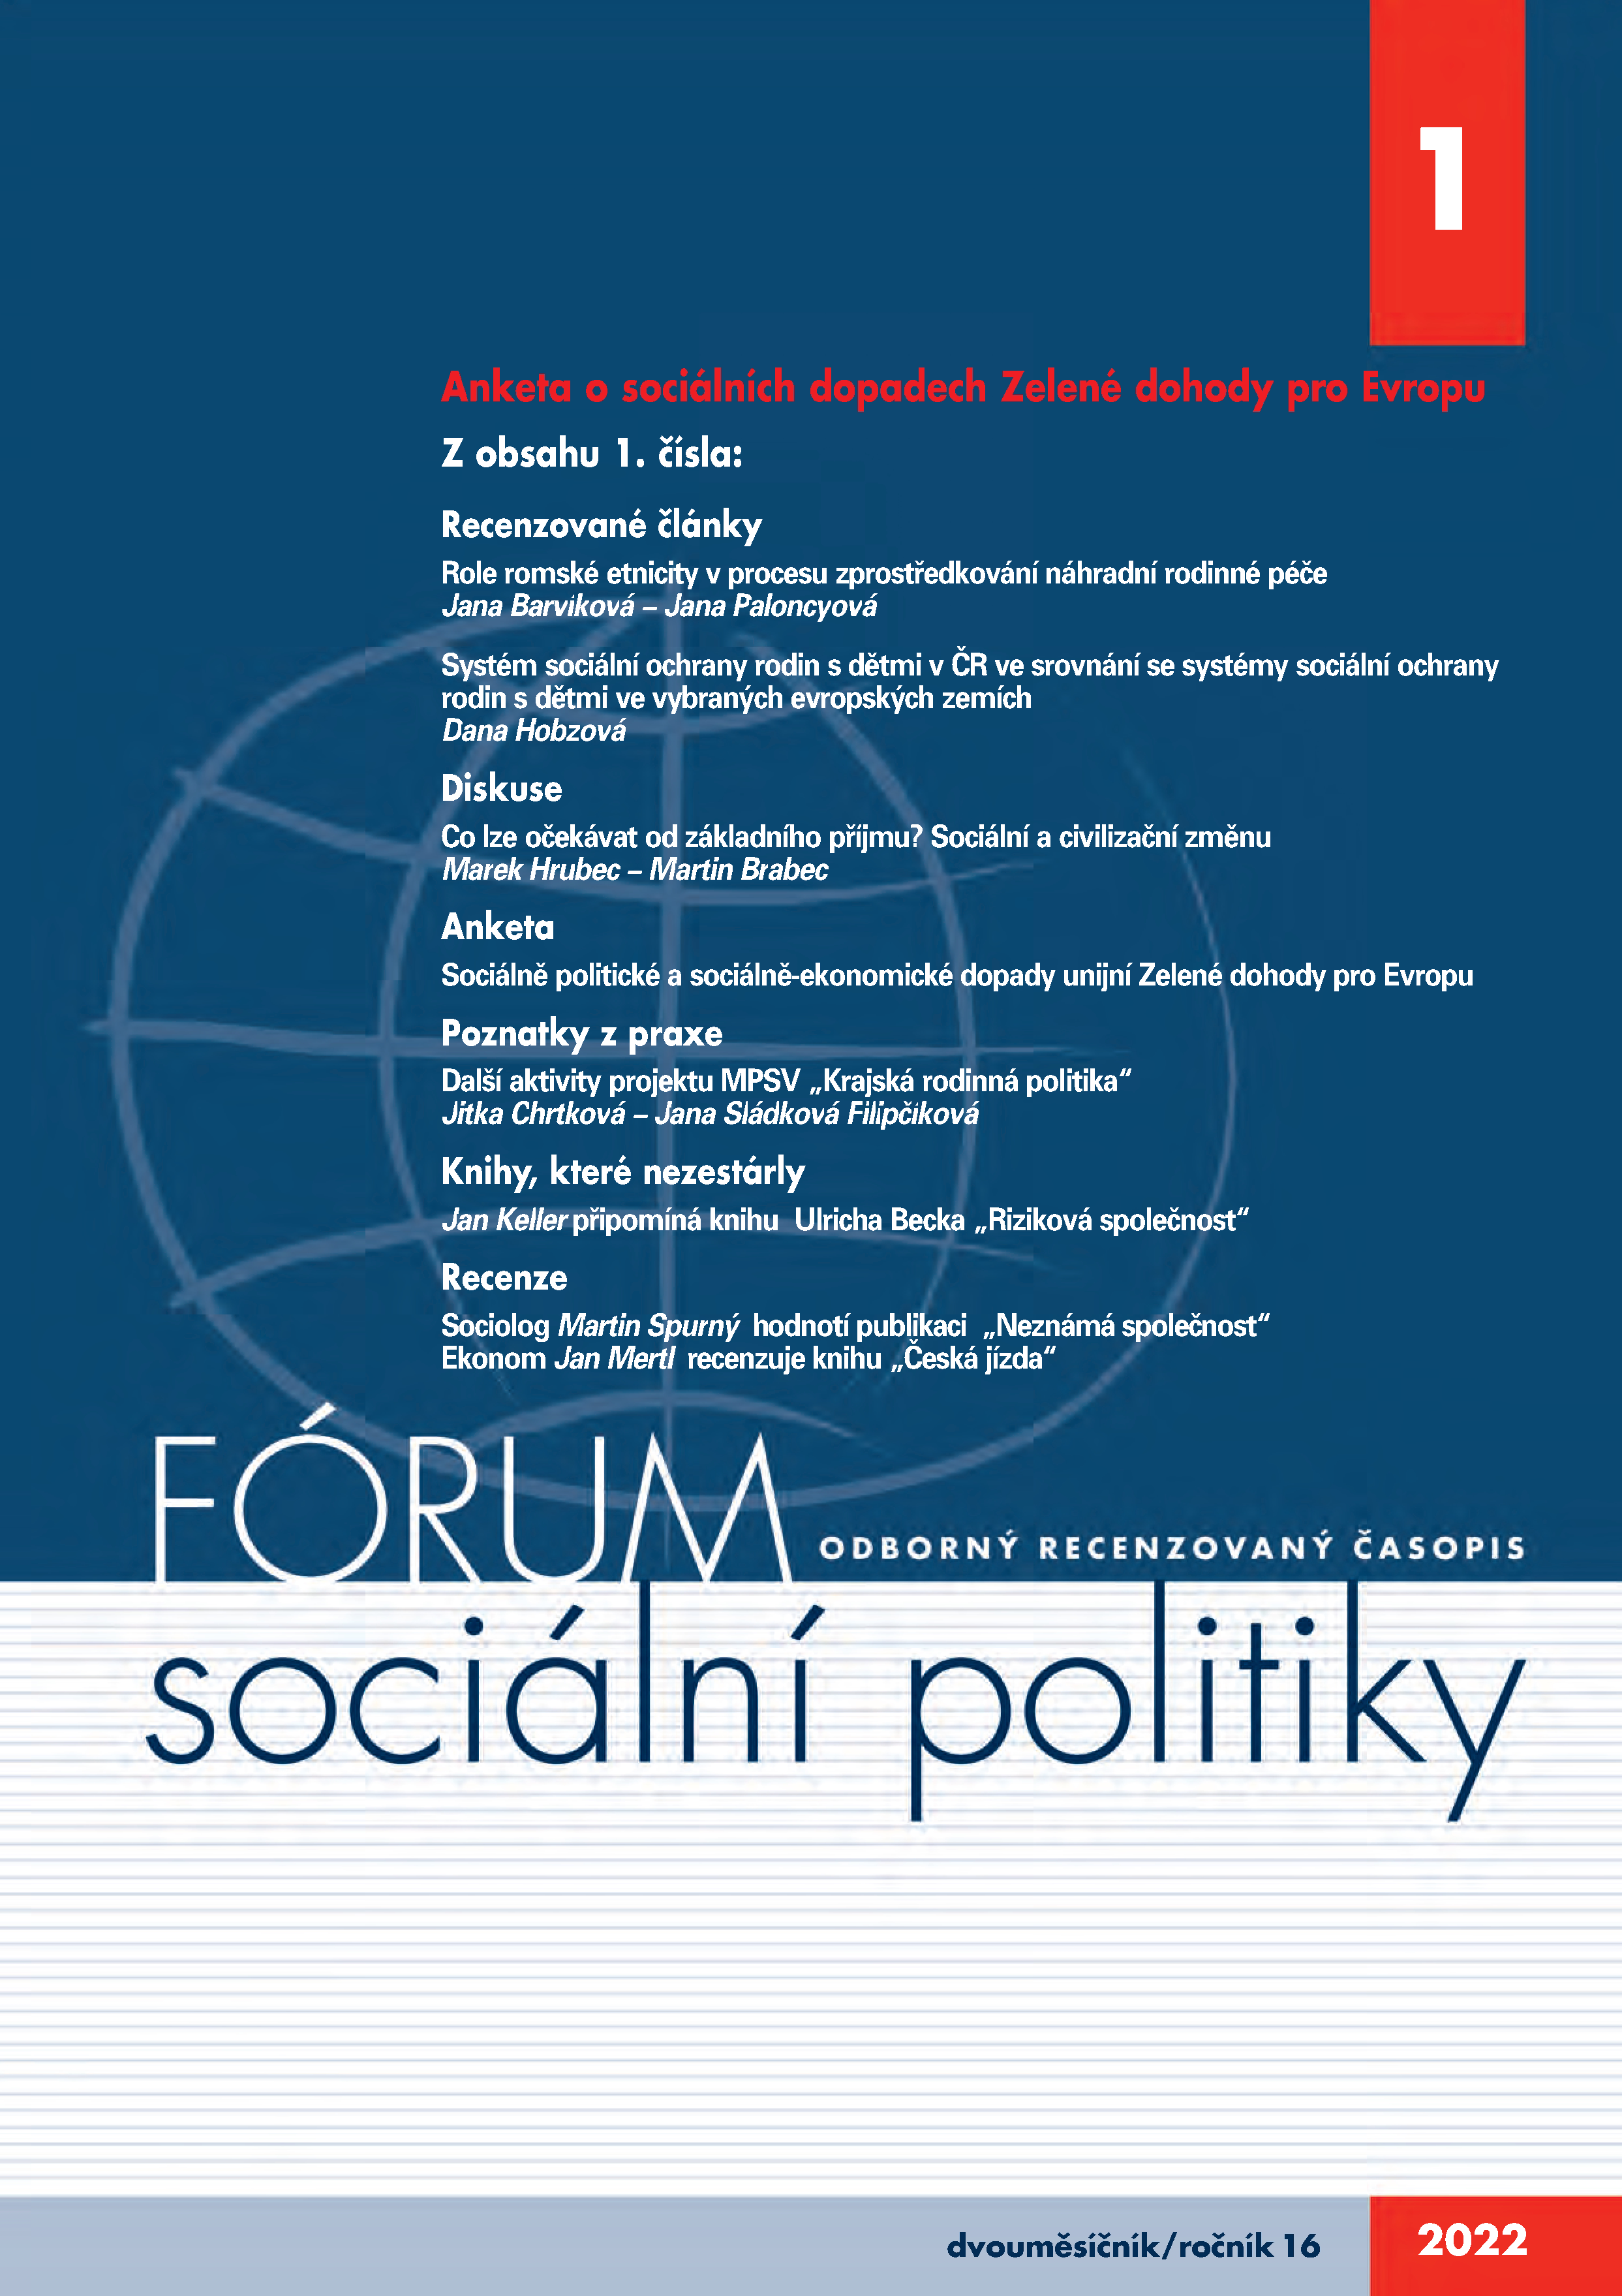 1. letošní číslo časopisu Fórum sociální politiky:  mj. o náhradní rodinné péči, sociální ochraně rodin s dětmi a o sociálních dopadech Zelené dohody pro Evropu